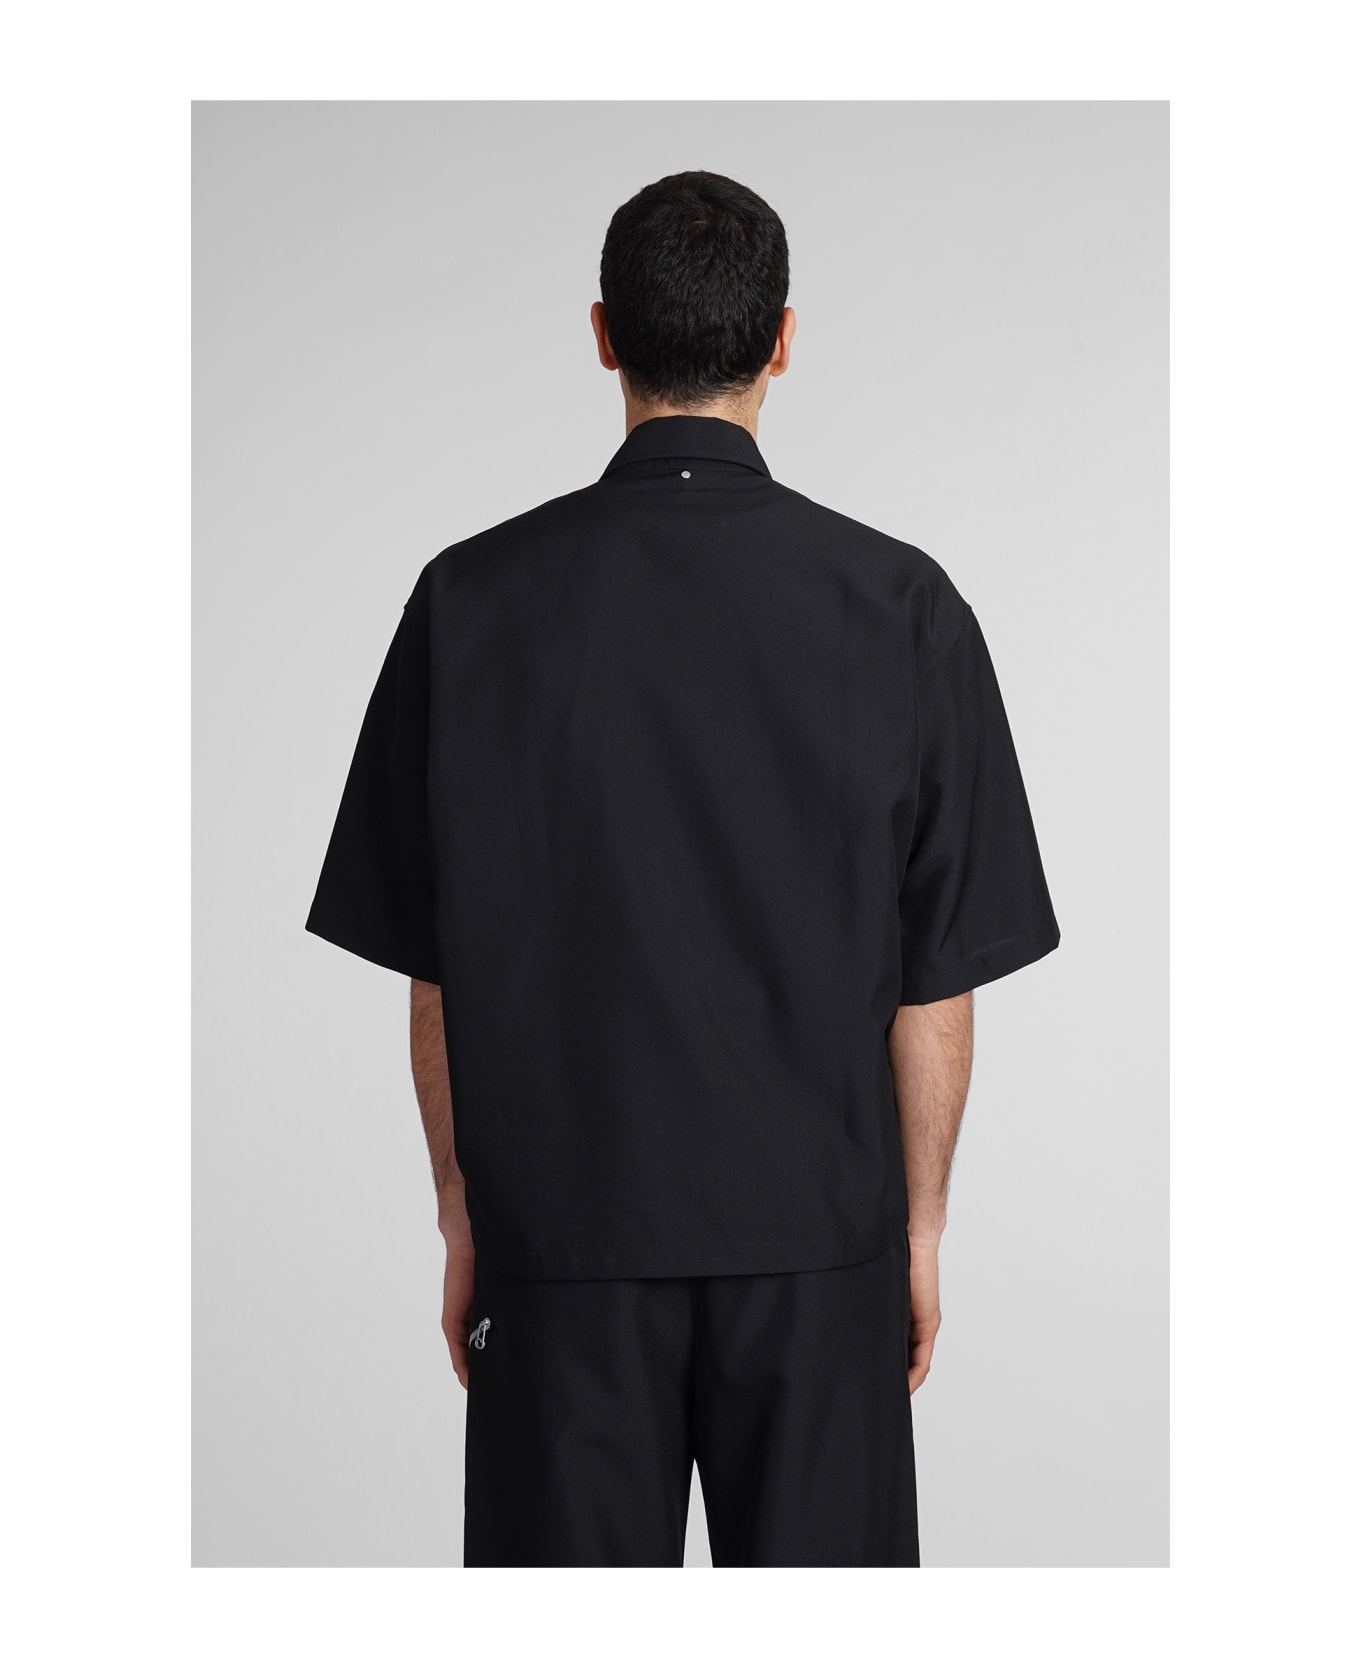 OAMC Sally Shirt In Black Polyester - Black